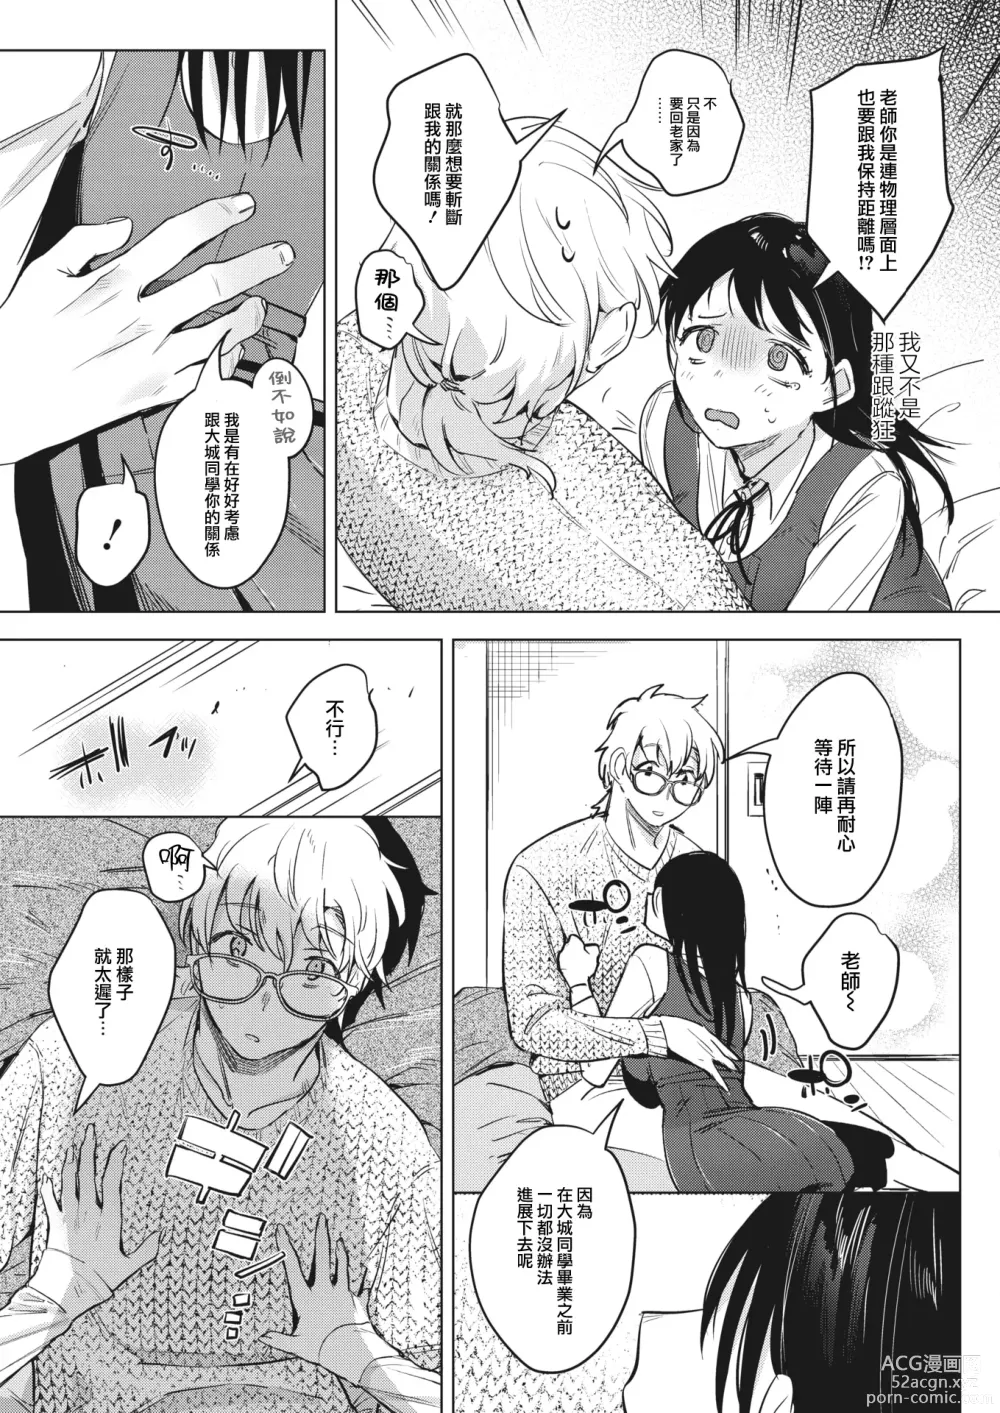 Page 4 of manga Himitsu no Hokenshitsu after